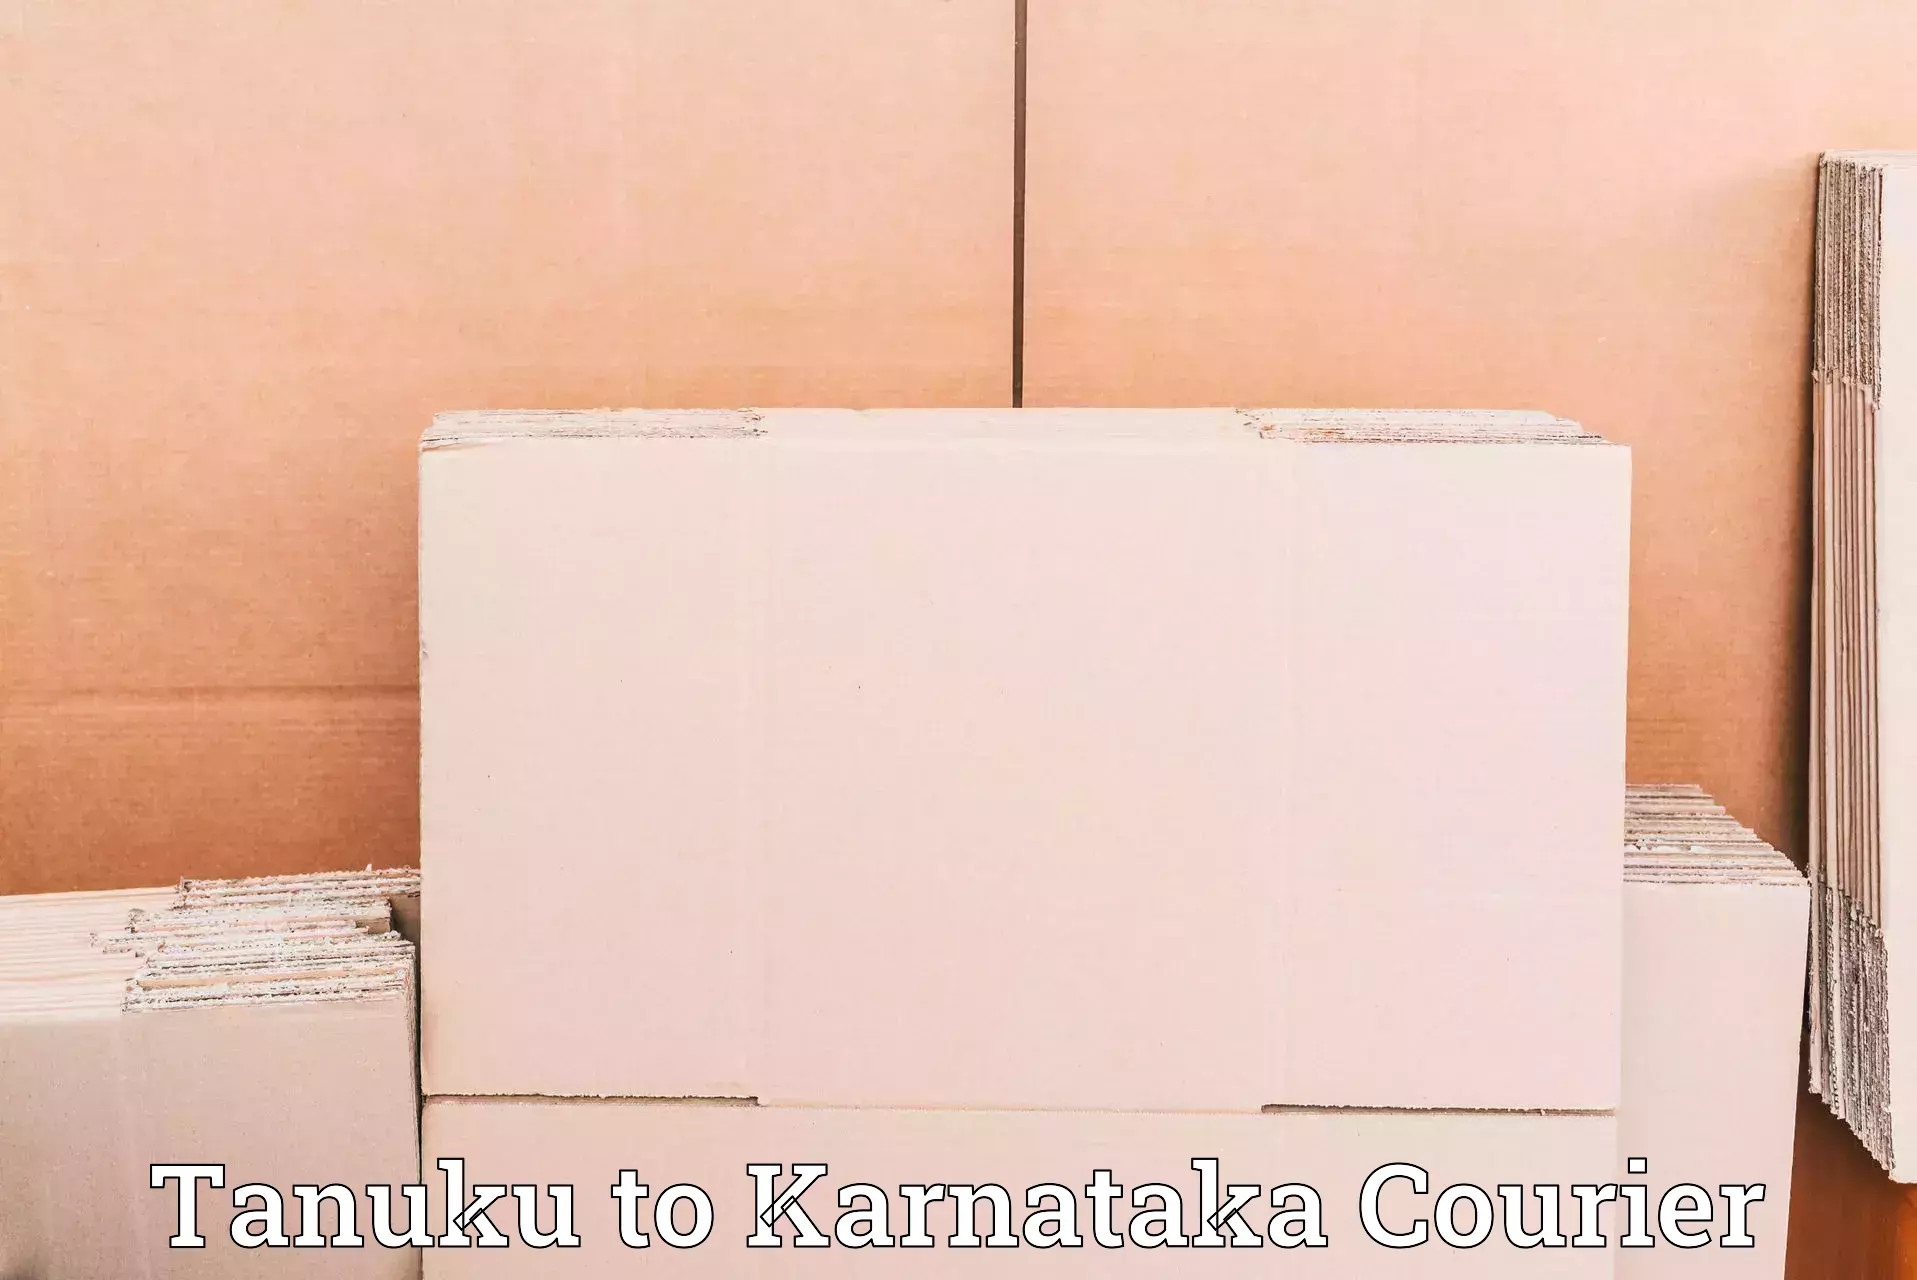 Door-to-door shipping in Tanuku to Karnataka